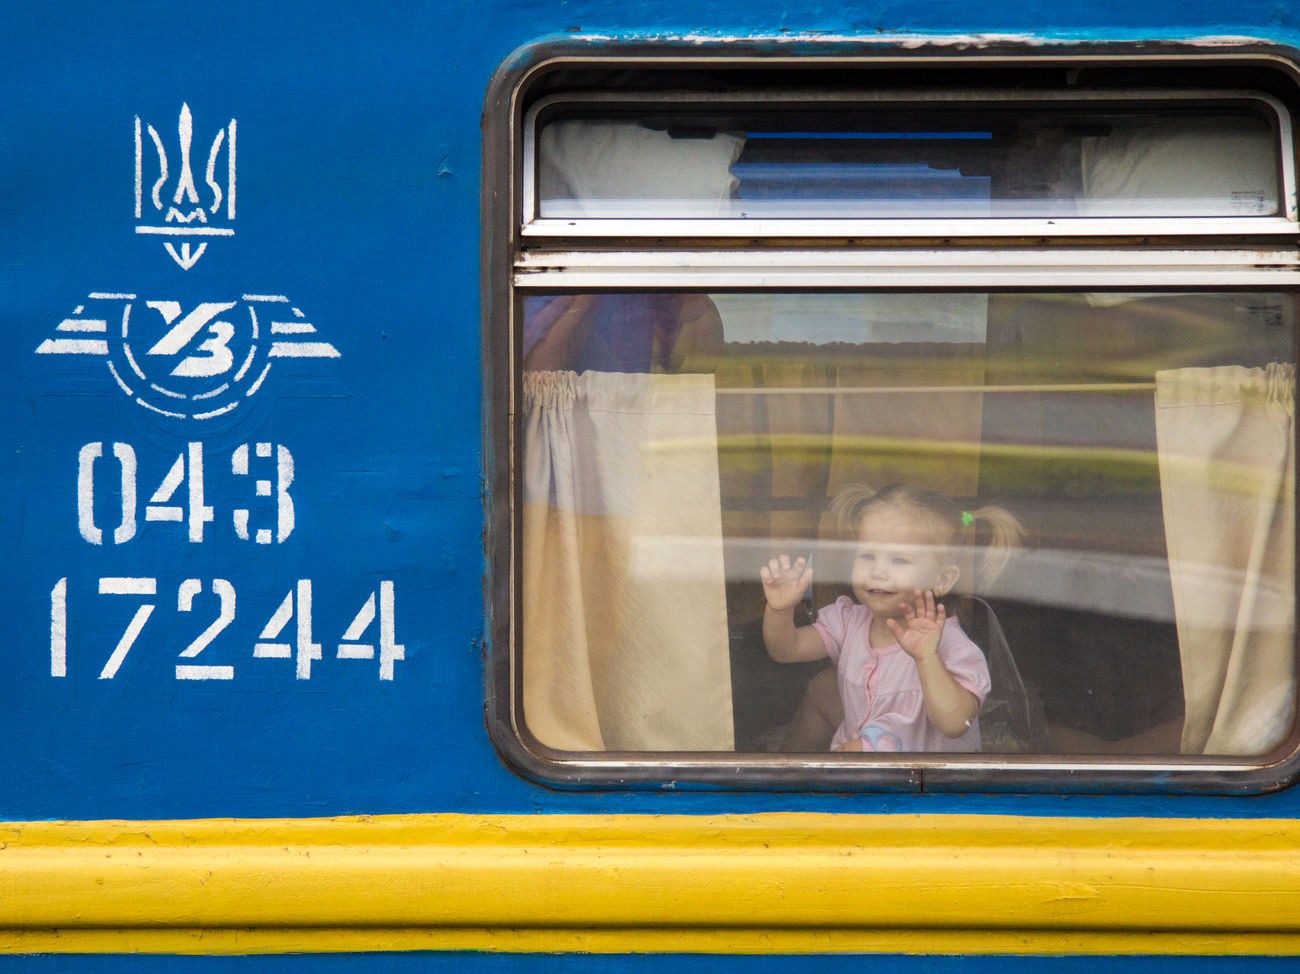 В Украине начинают ежемесячно поднимать цену билетов на поезда